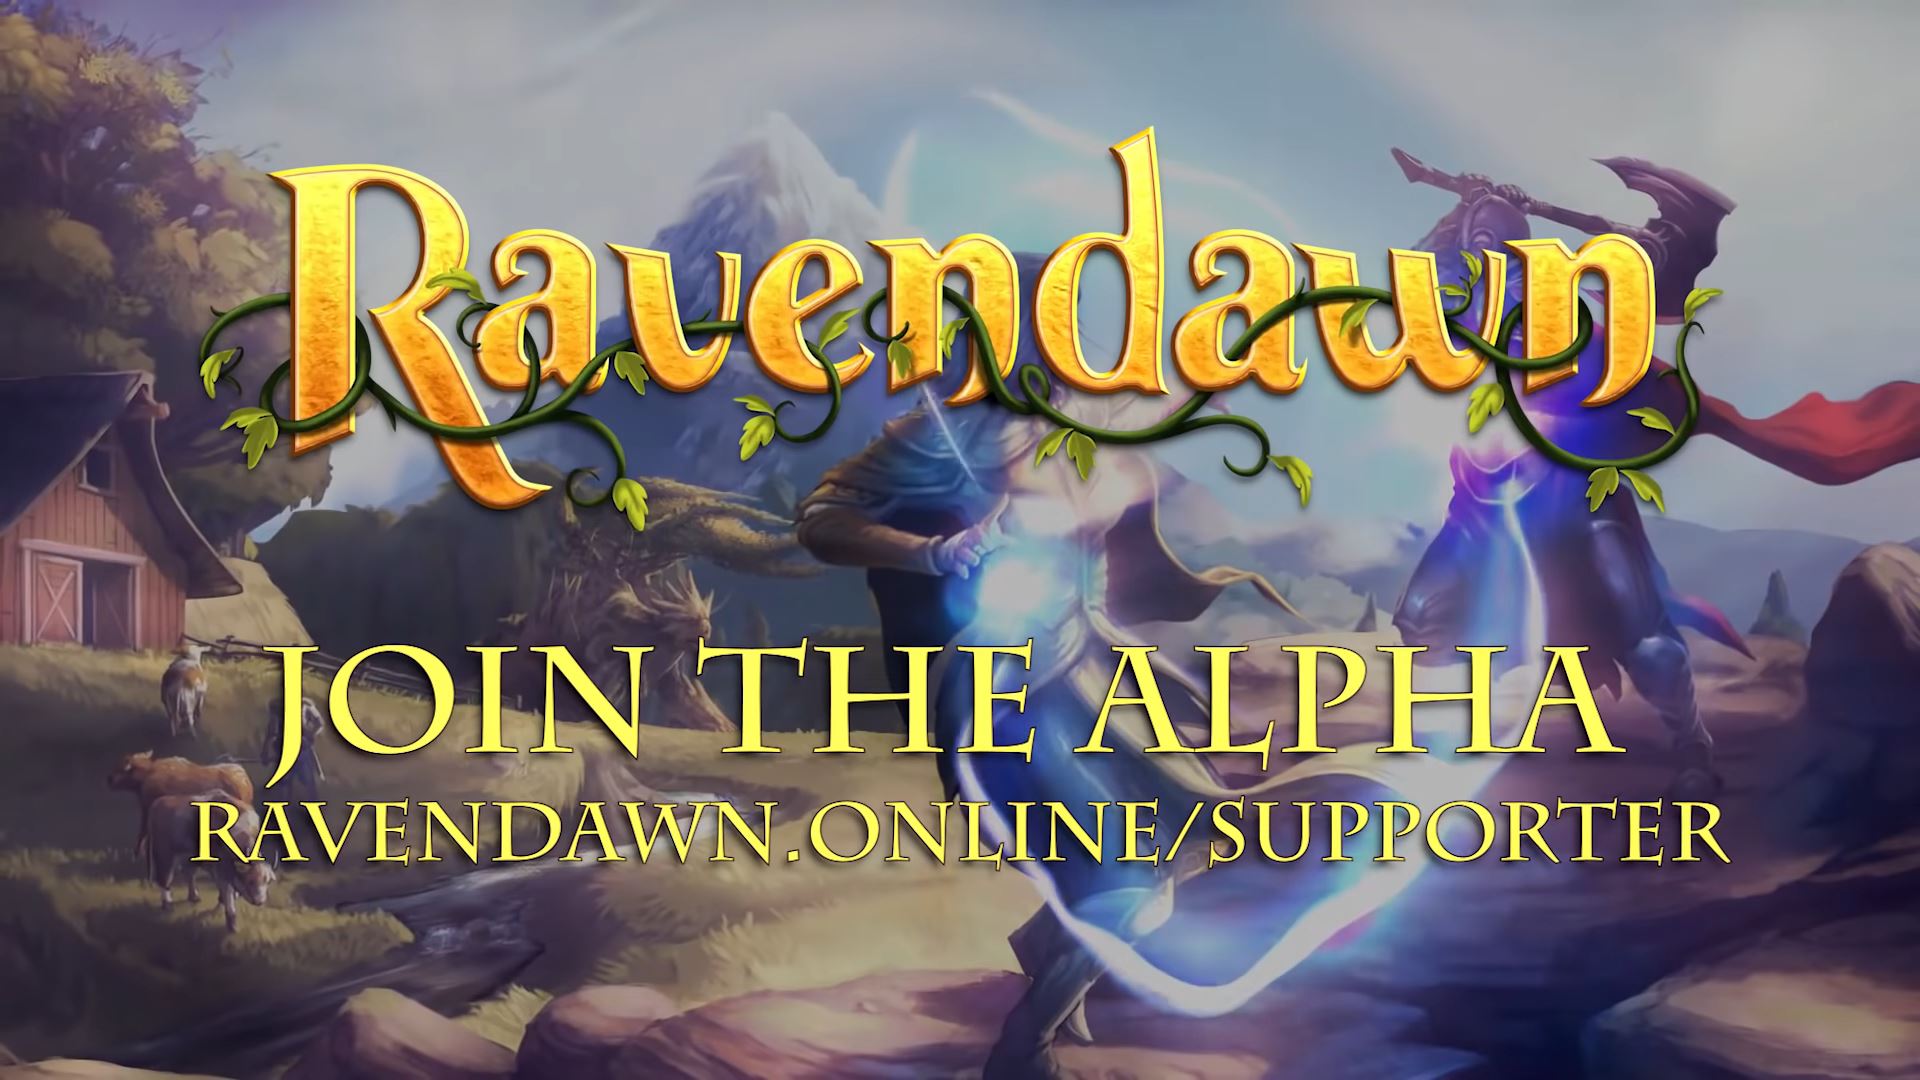 Ravendawn - grafika promująca grę (źródło: YouTube)